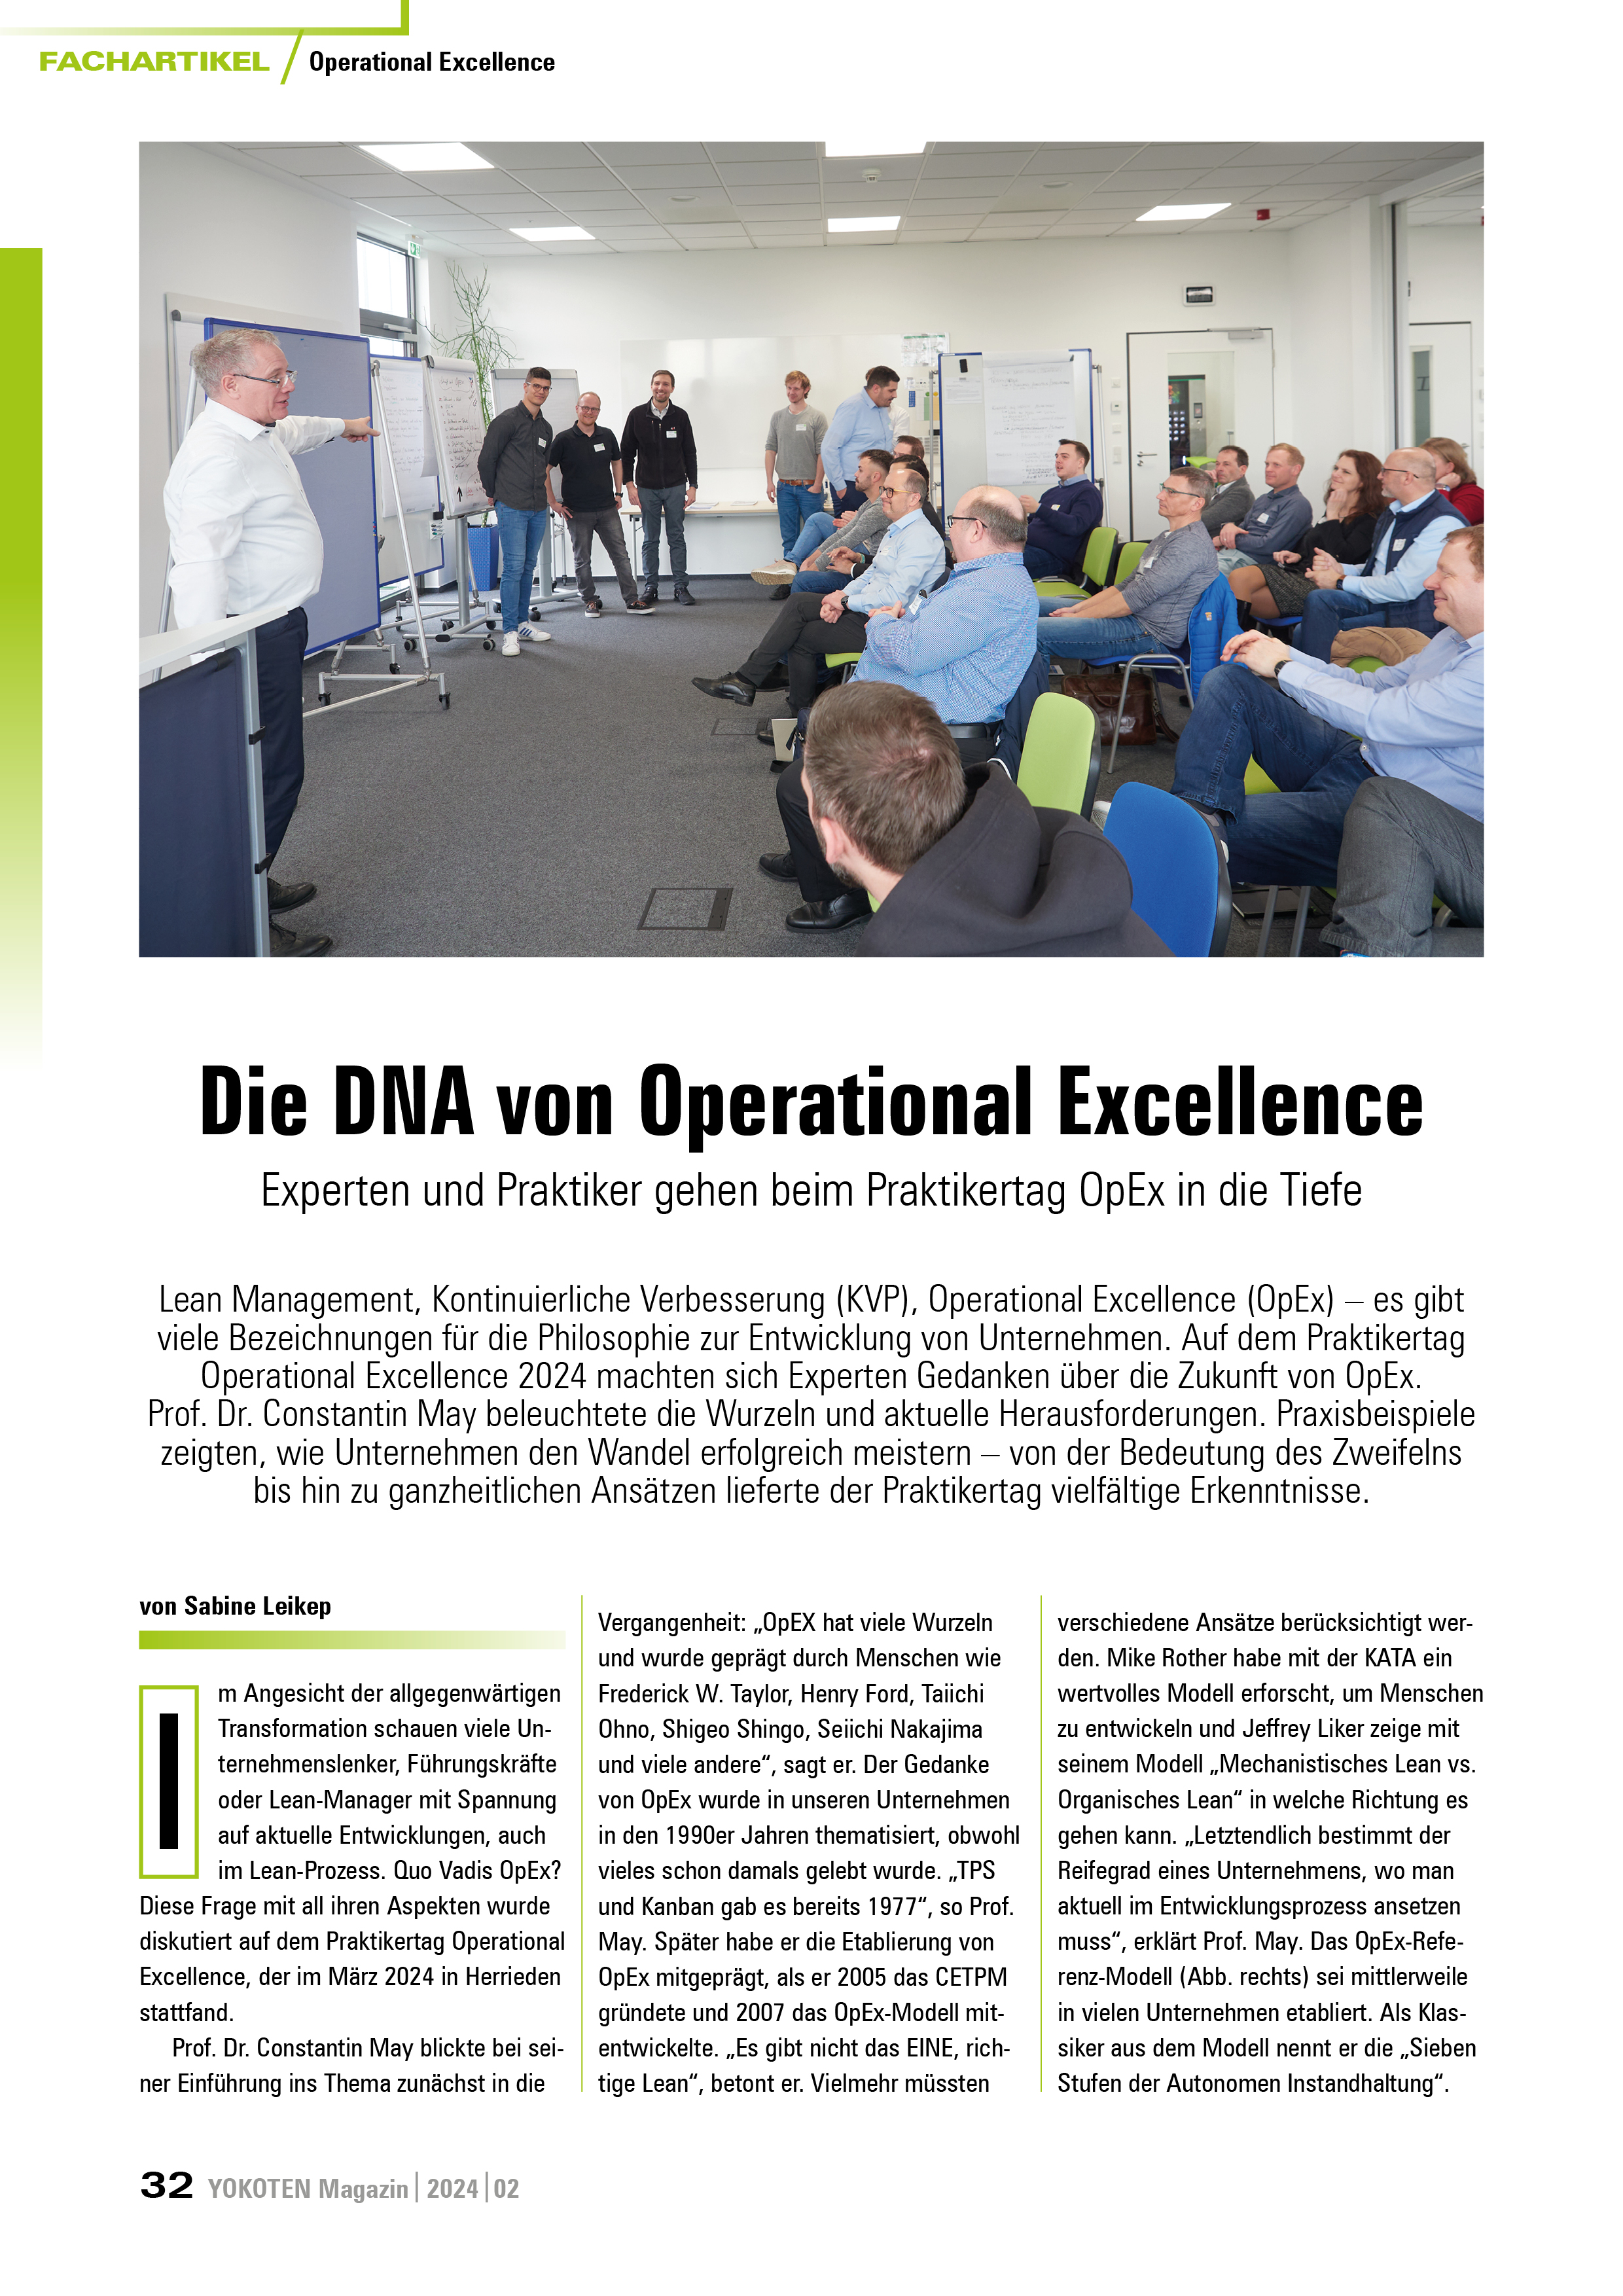 Die DNA von Operational Excellence - Artikel aus Fachmagazin YOKOTEN 2024-02